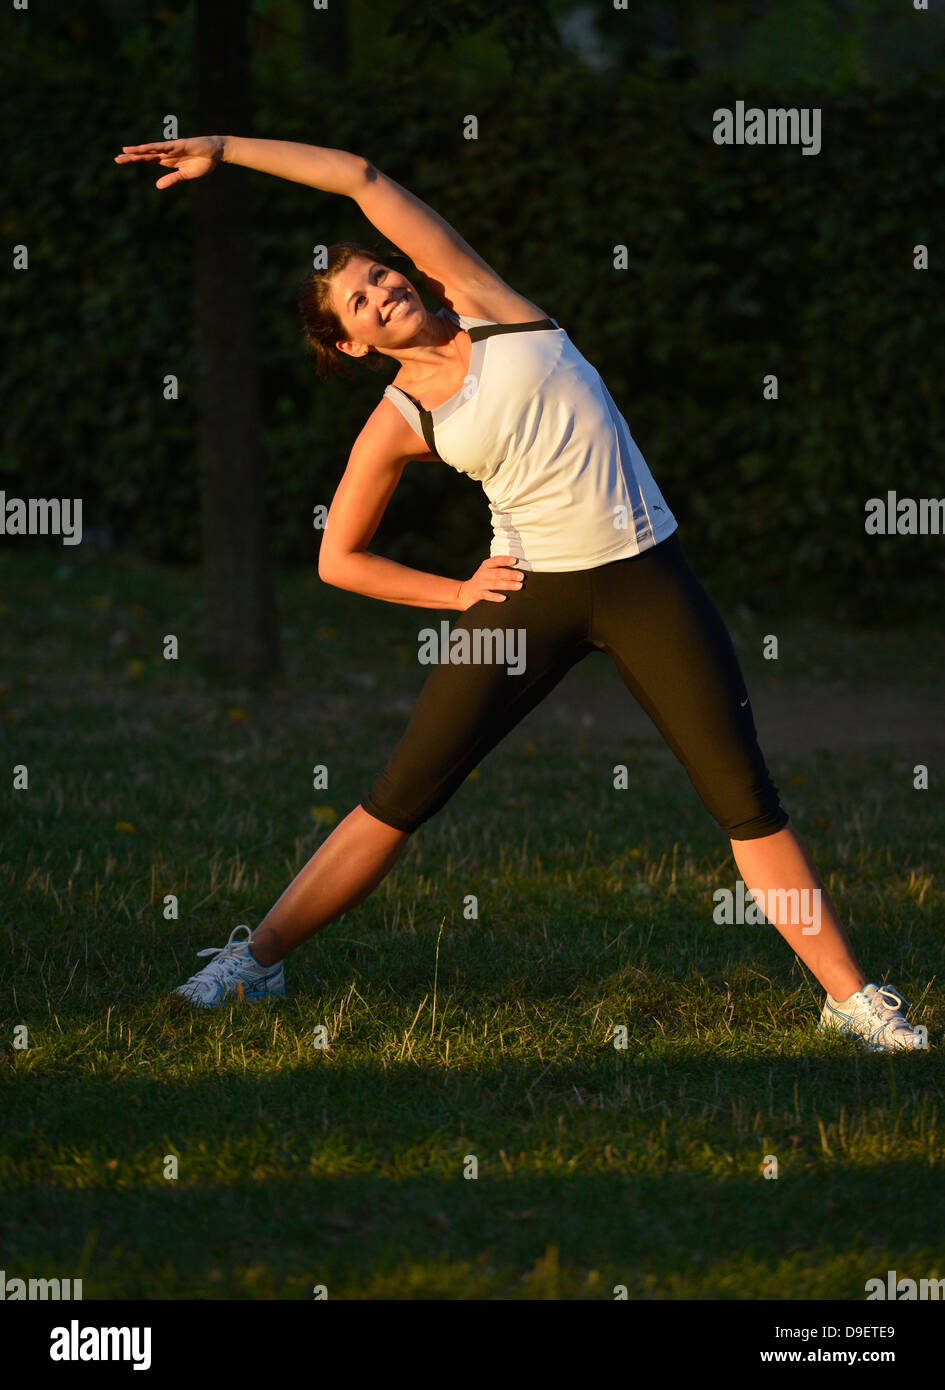 (Model Release) Junge Frau beim Aufwärmen, dehnen, stretching, Yoga, Joggen Stockfoto